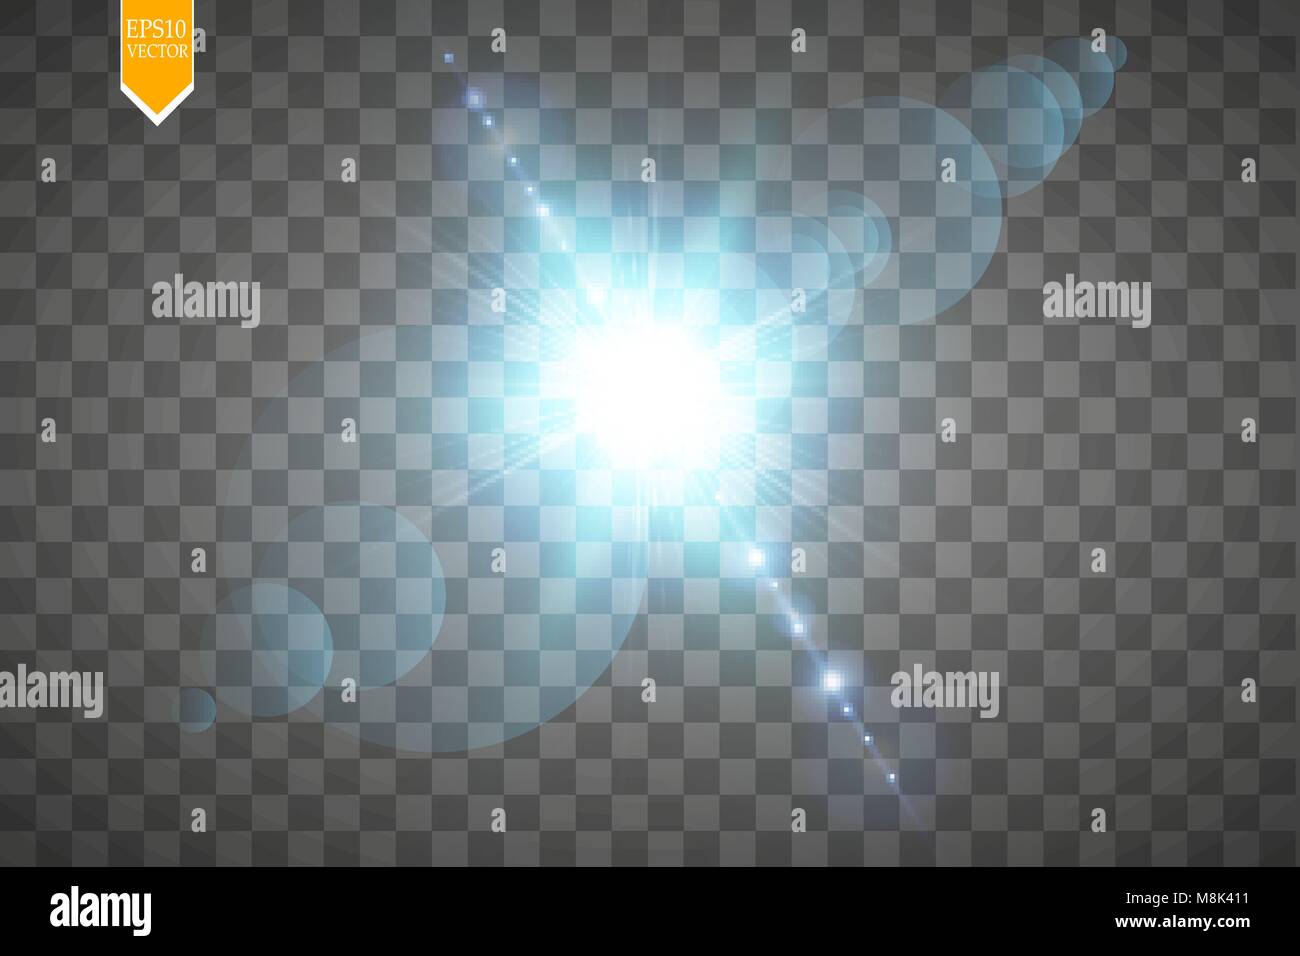 Kreatives Konzept Glow Light Effect Sterne Bursts mit funkelt auf transparentem Hintergrund isoliert. Zur Illustration Vorlage art Design, Banner für Weihnachten feiern. Stock Vektor